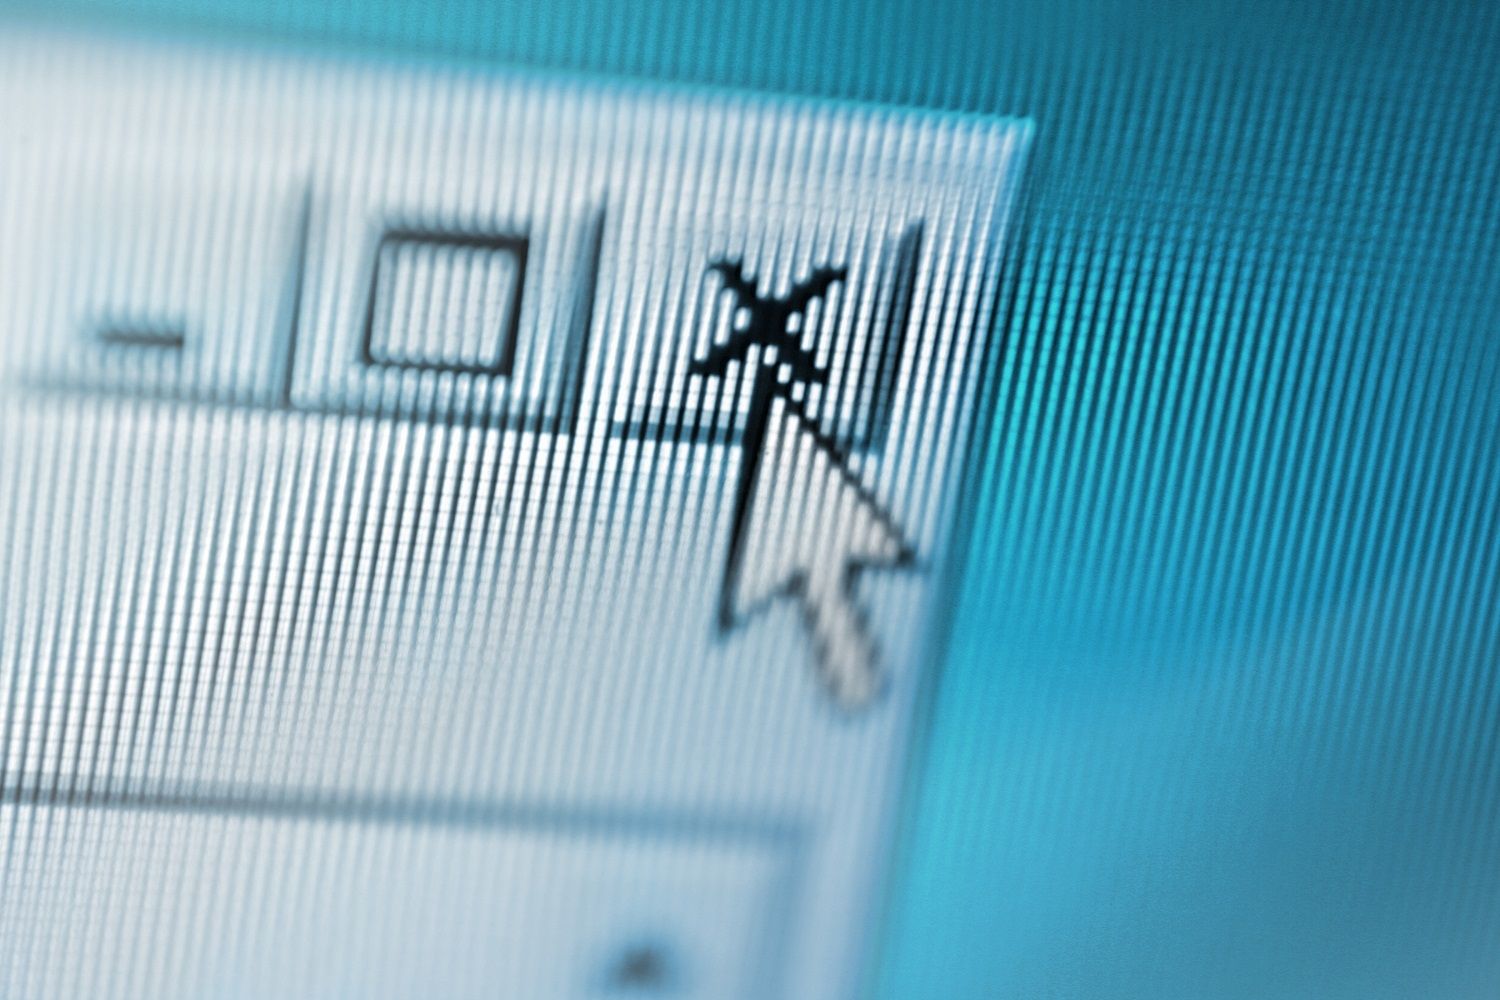 Gros plan d’un écran d’ordinateur où le pointeur de la souris ferme une fenêtre pop-up suspecte